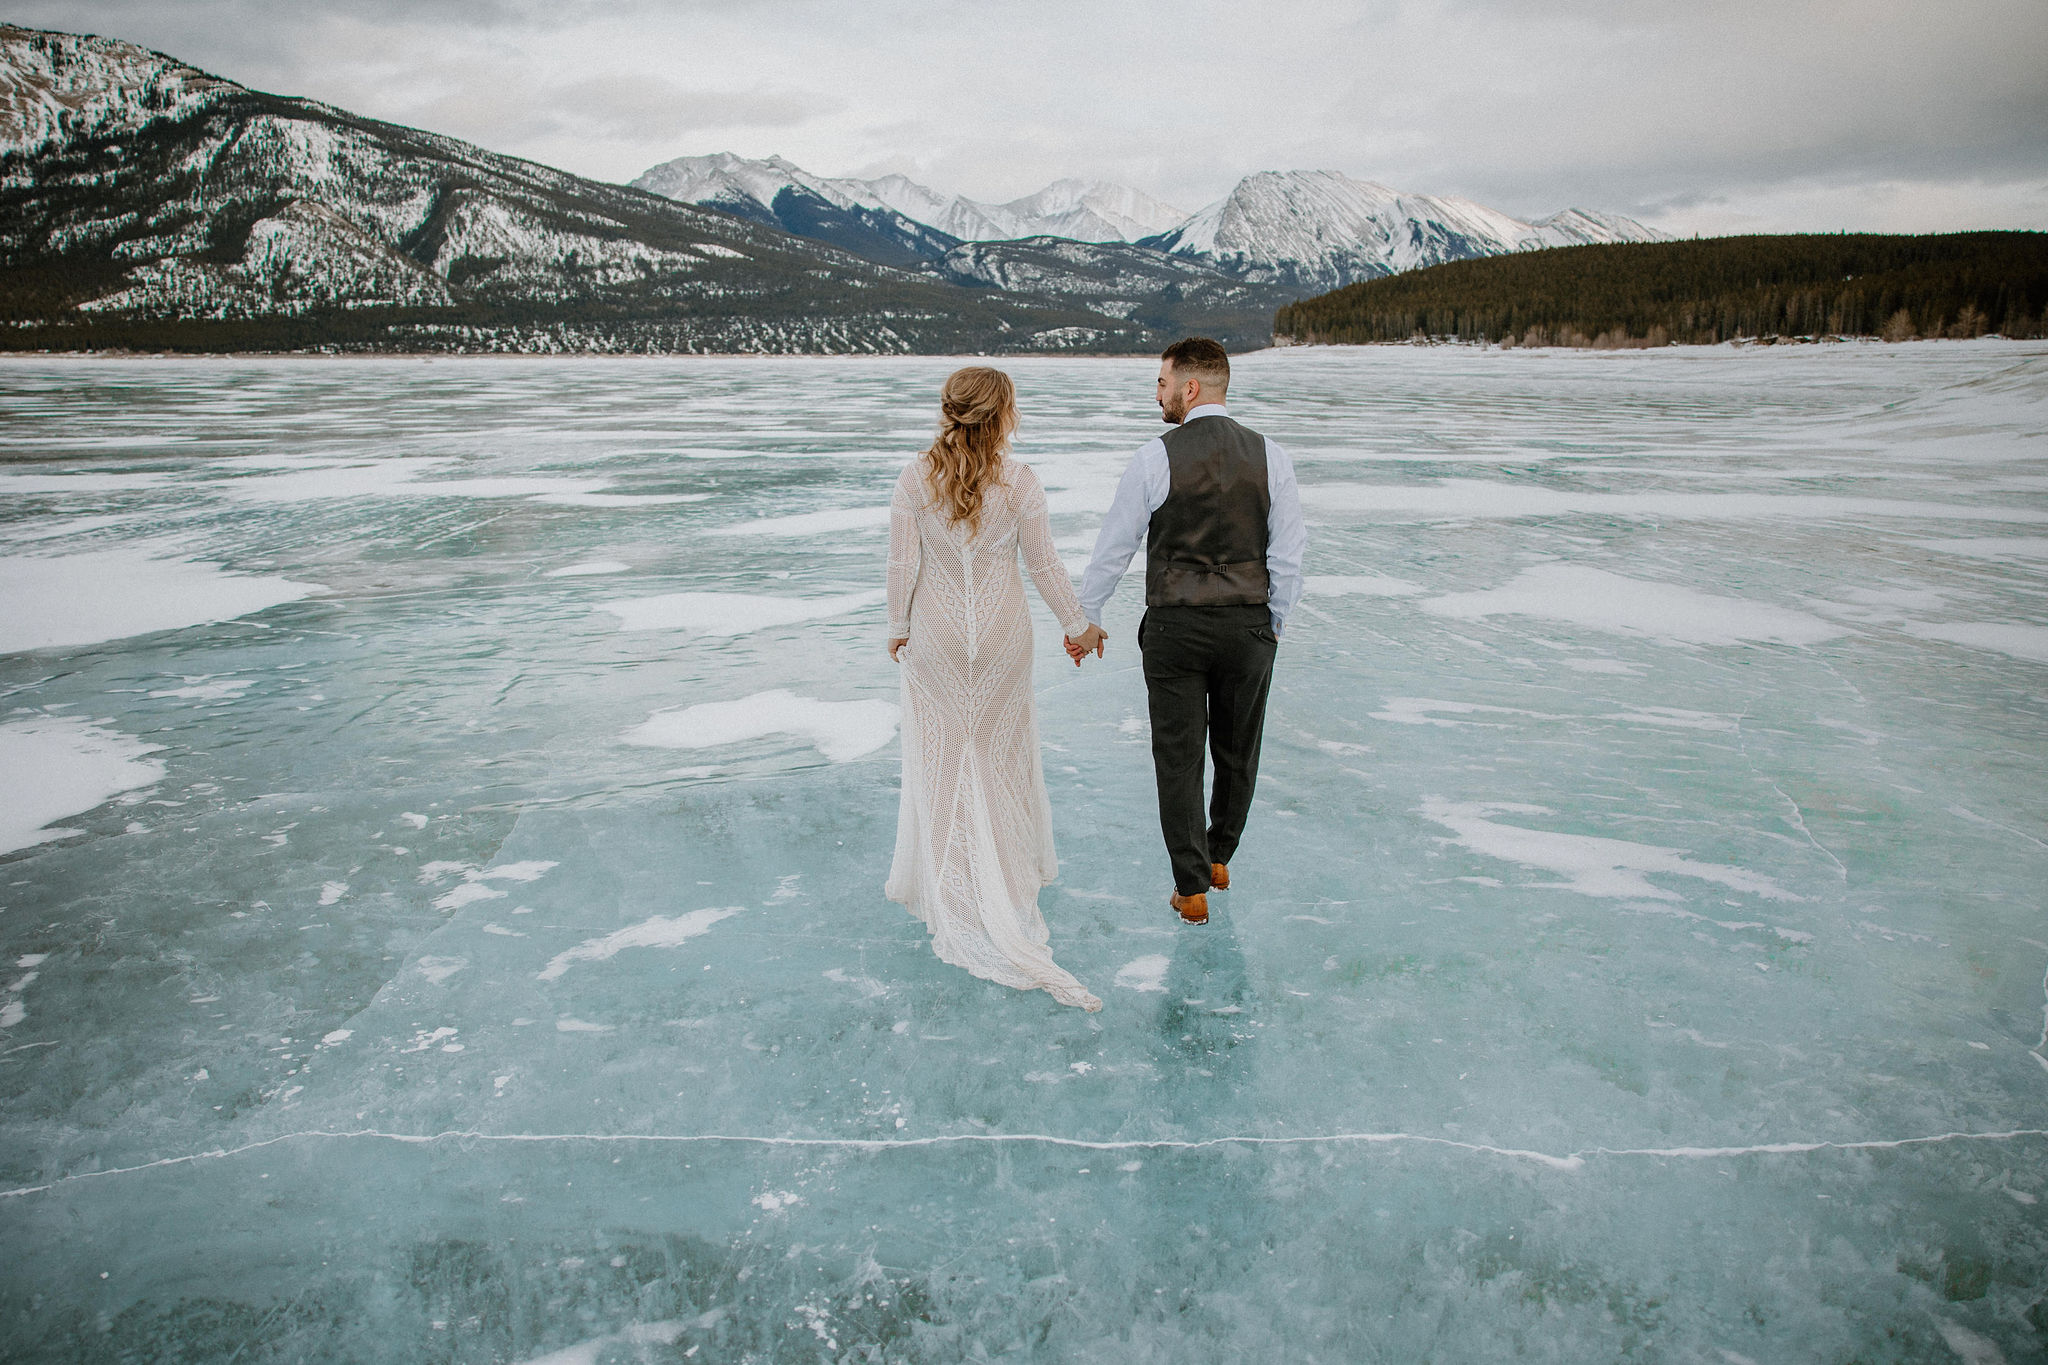 Couple in wedding formal walking on frozen lake